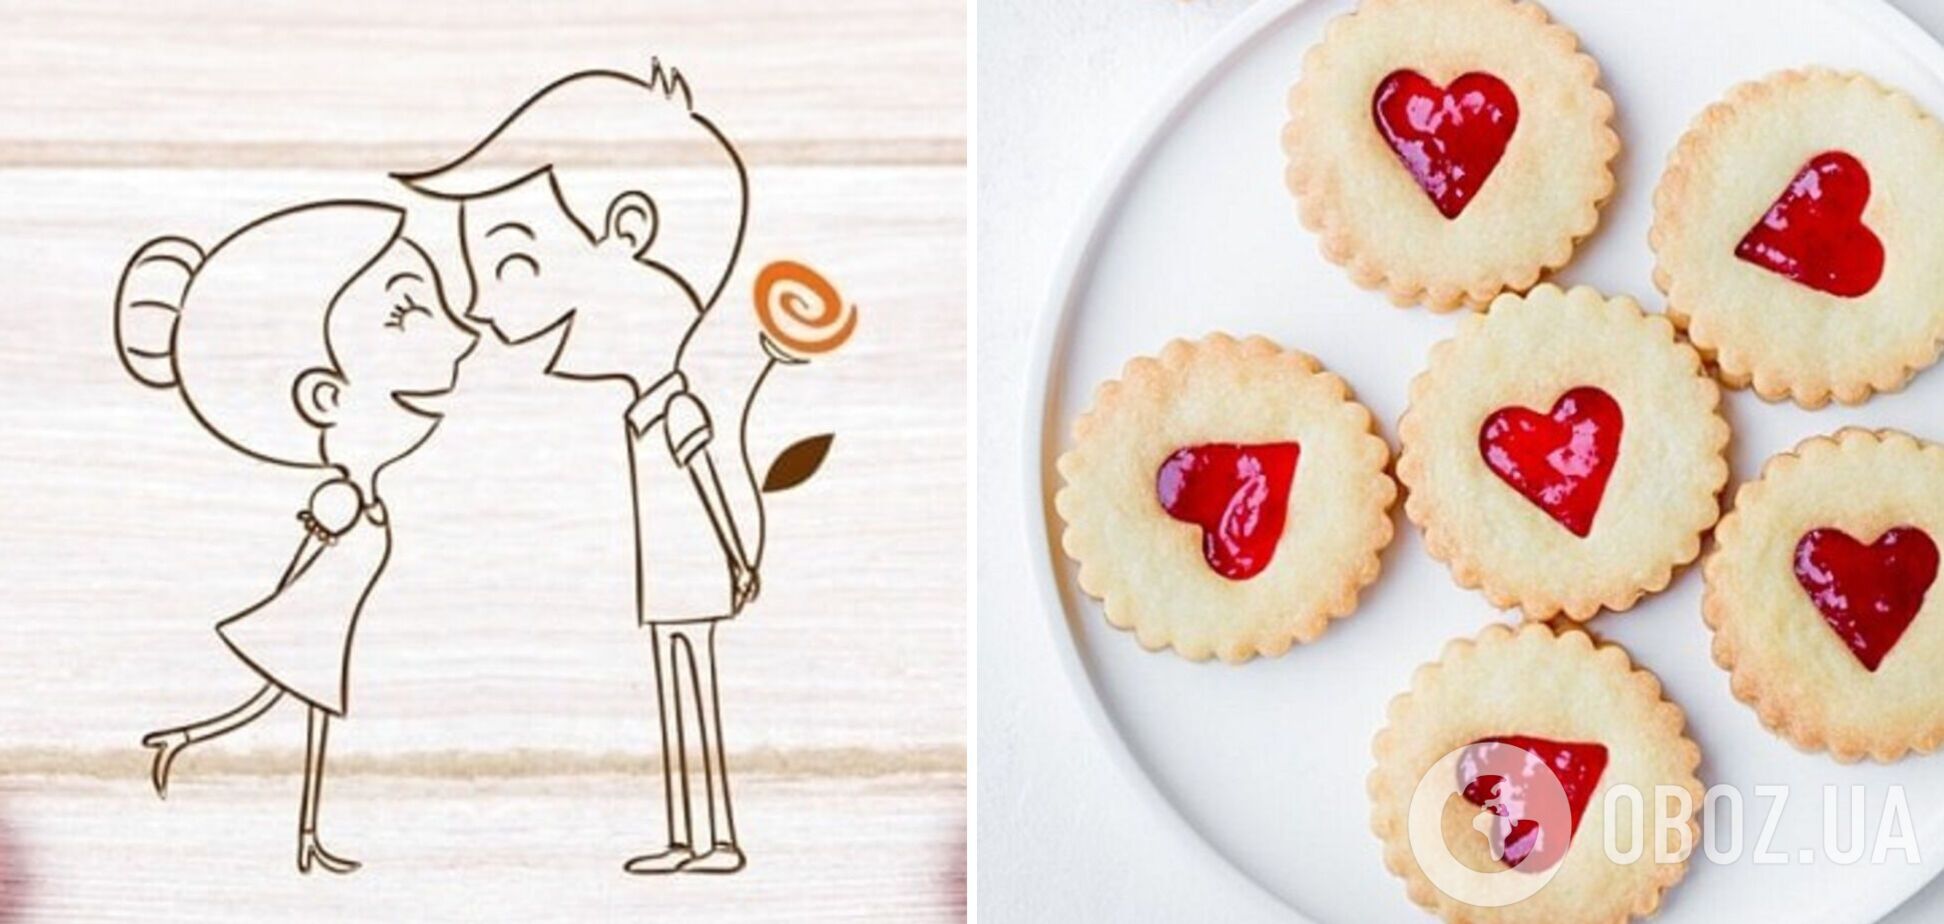 Романтичне печиво 'Солодкі валентинки': як вразити кохану людину в День закоханих